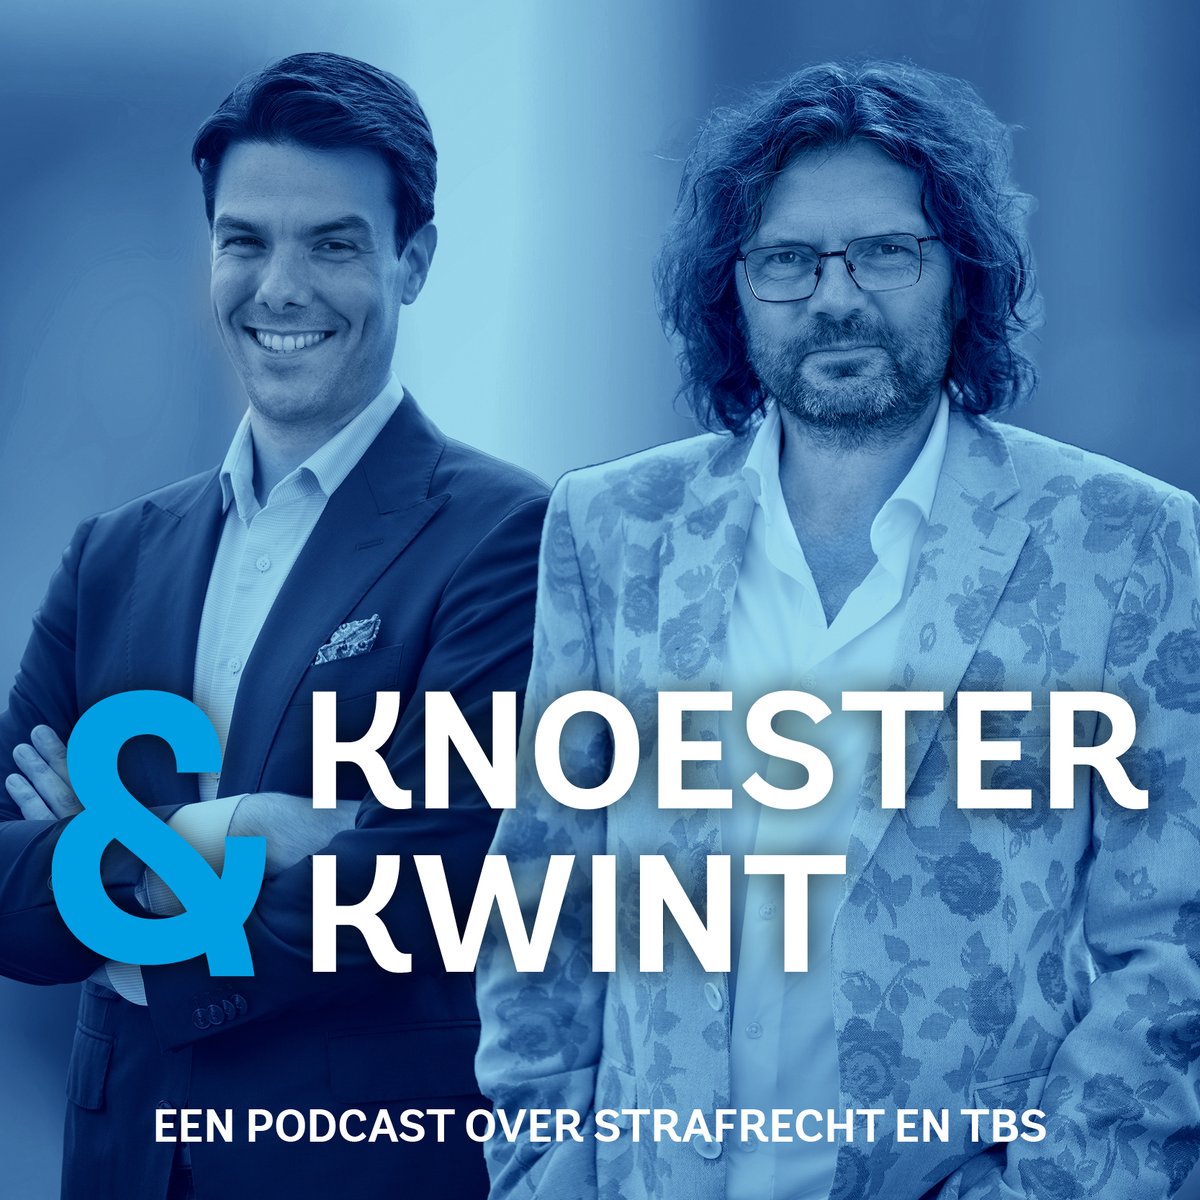 Christiaan Kwint en ik zijn strafrechtadvocaten en gespecialiseerd in tbs. Samen met Audiopodcast maken wij een nieuwe podcast genaamd Knoester & Kwint.
In de eerste aflevering van Knoester & Kwint spreken wij met Barry. Barry heeft een moeilijke start gehad in zijn leven. Hij